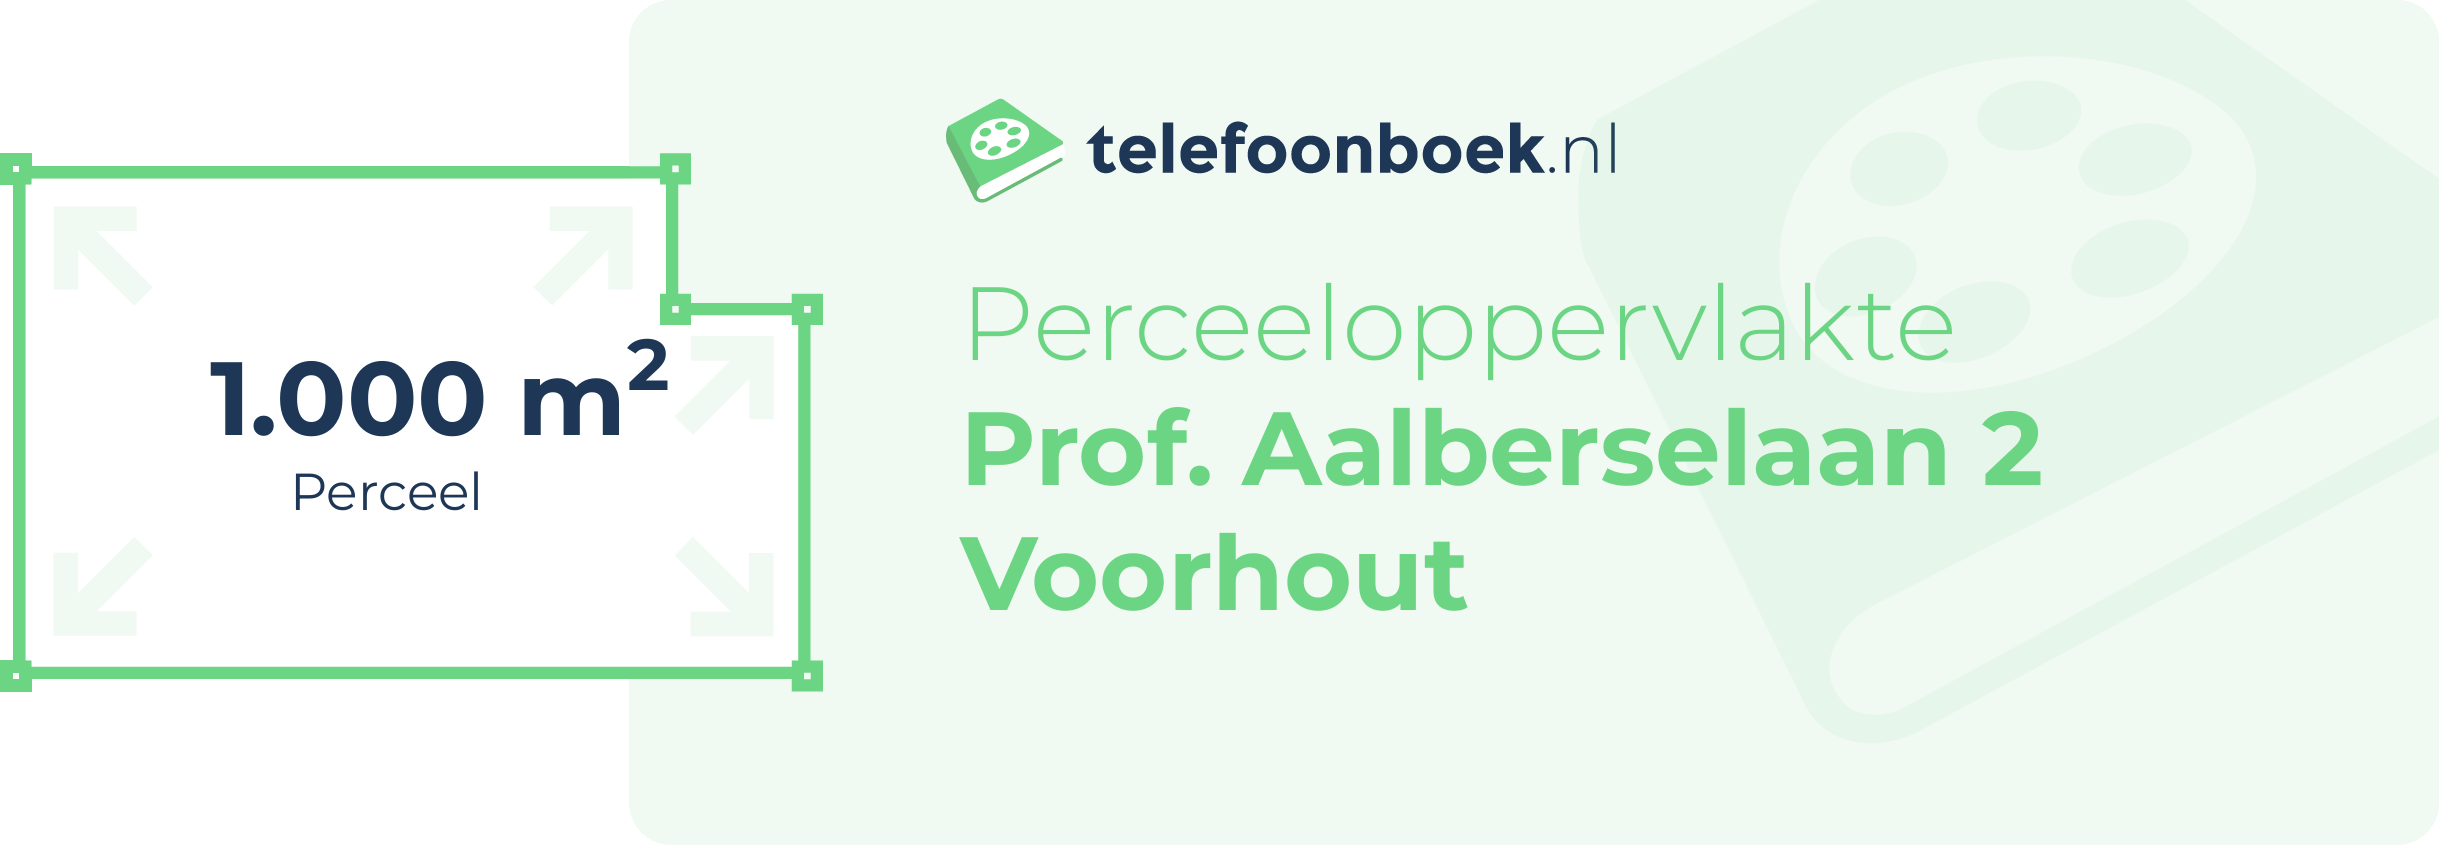 Perceeloppervlakte Prof. Aalberselaan 2 Voorhout